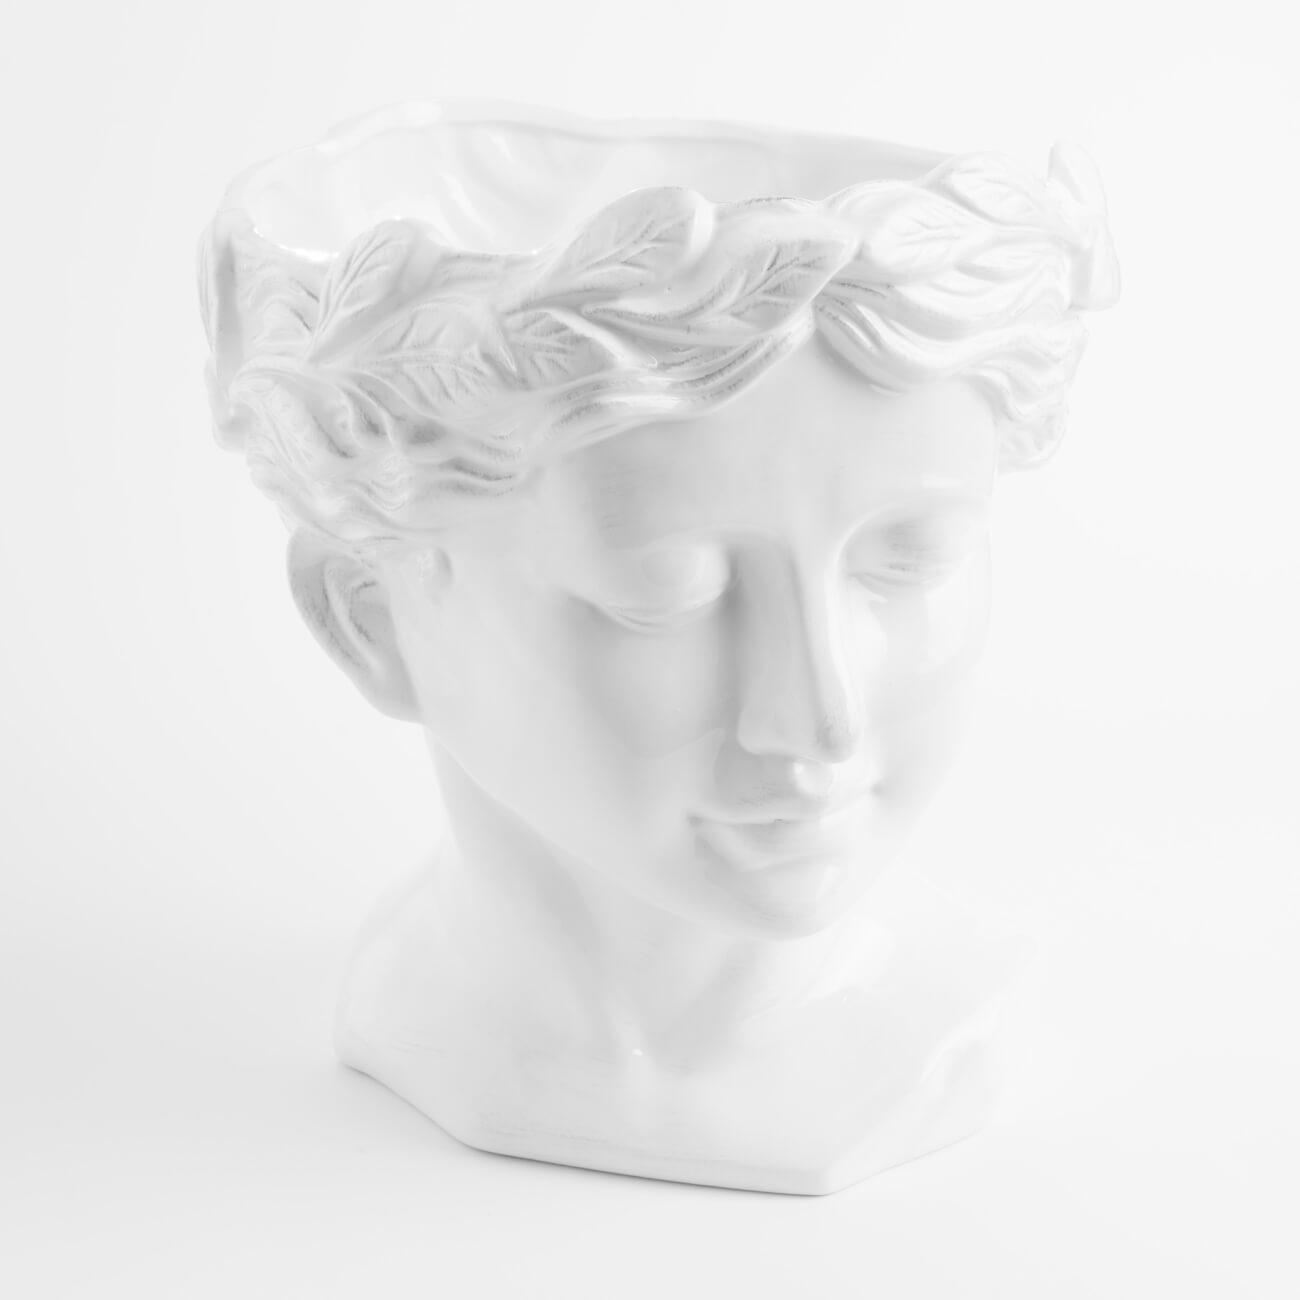 Ваза для цветов, 29 см, декоративная, керамика, белая, Афродита, Olympus ваза для ов 26 см декоративная керамика белая лицо face